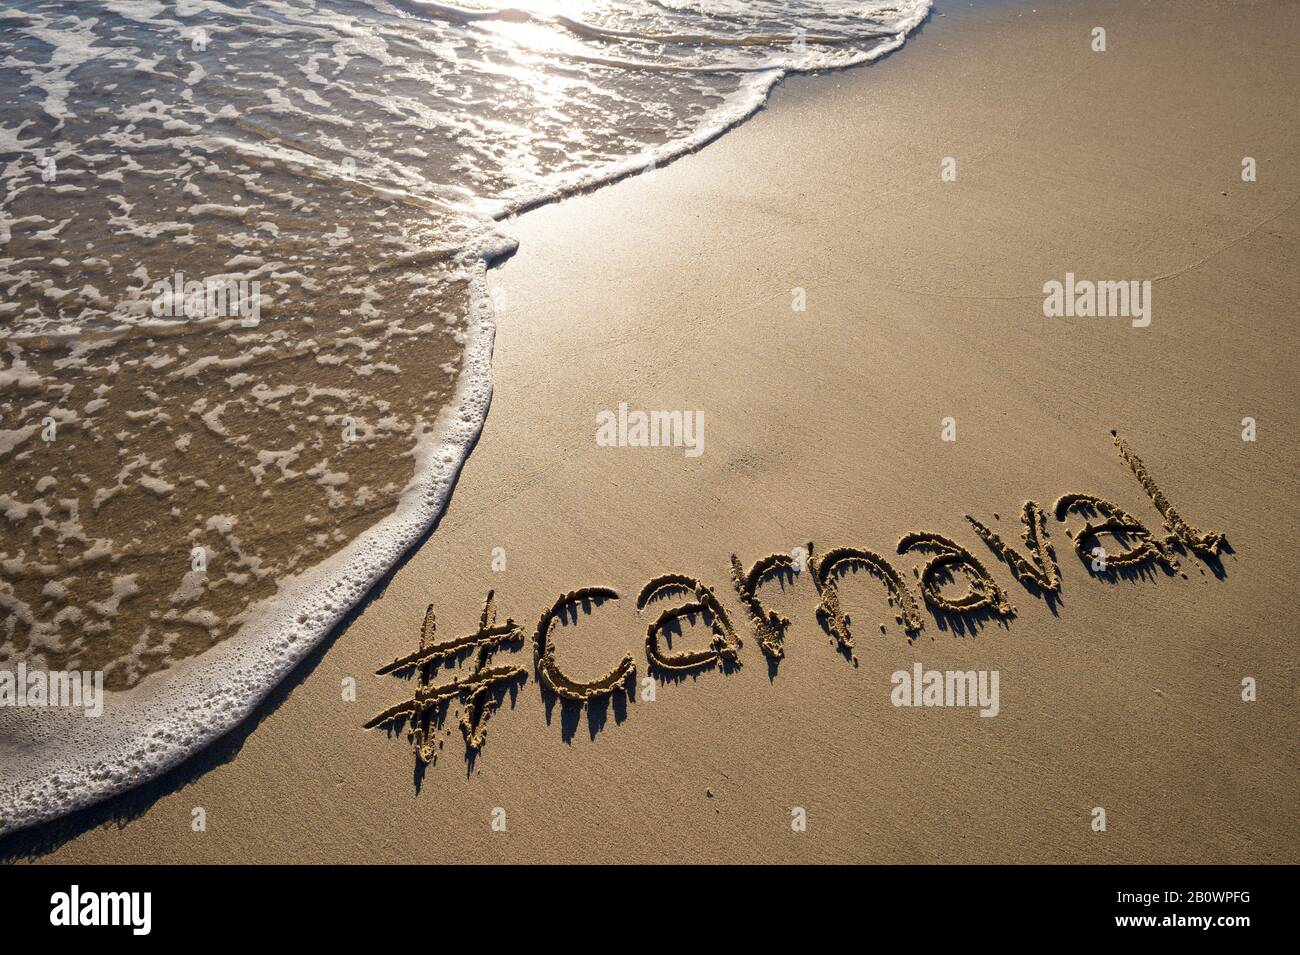 Moderne Botschaft für Karneval (portugiesisch für Karneval) mit einem sozialmedienfreundlichen Hashtag, der auf glattem Sandstrand geschrieben ist Stockfoto